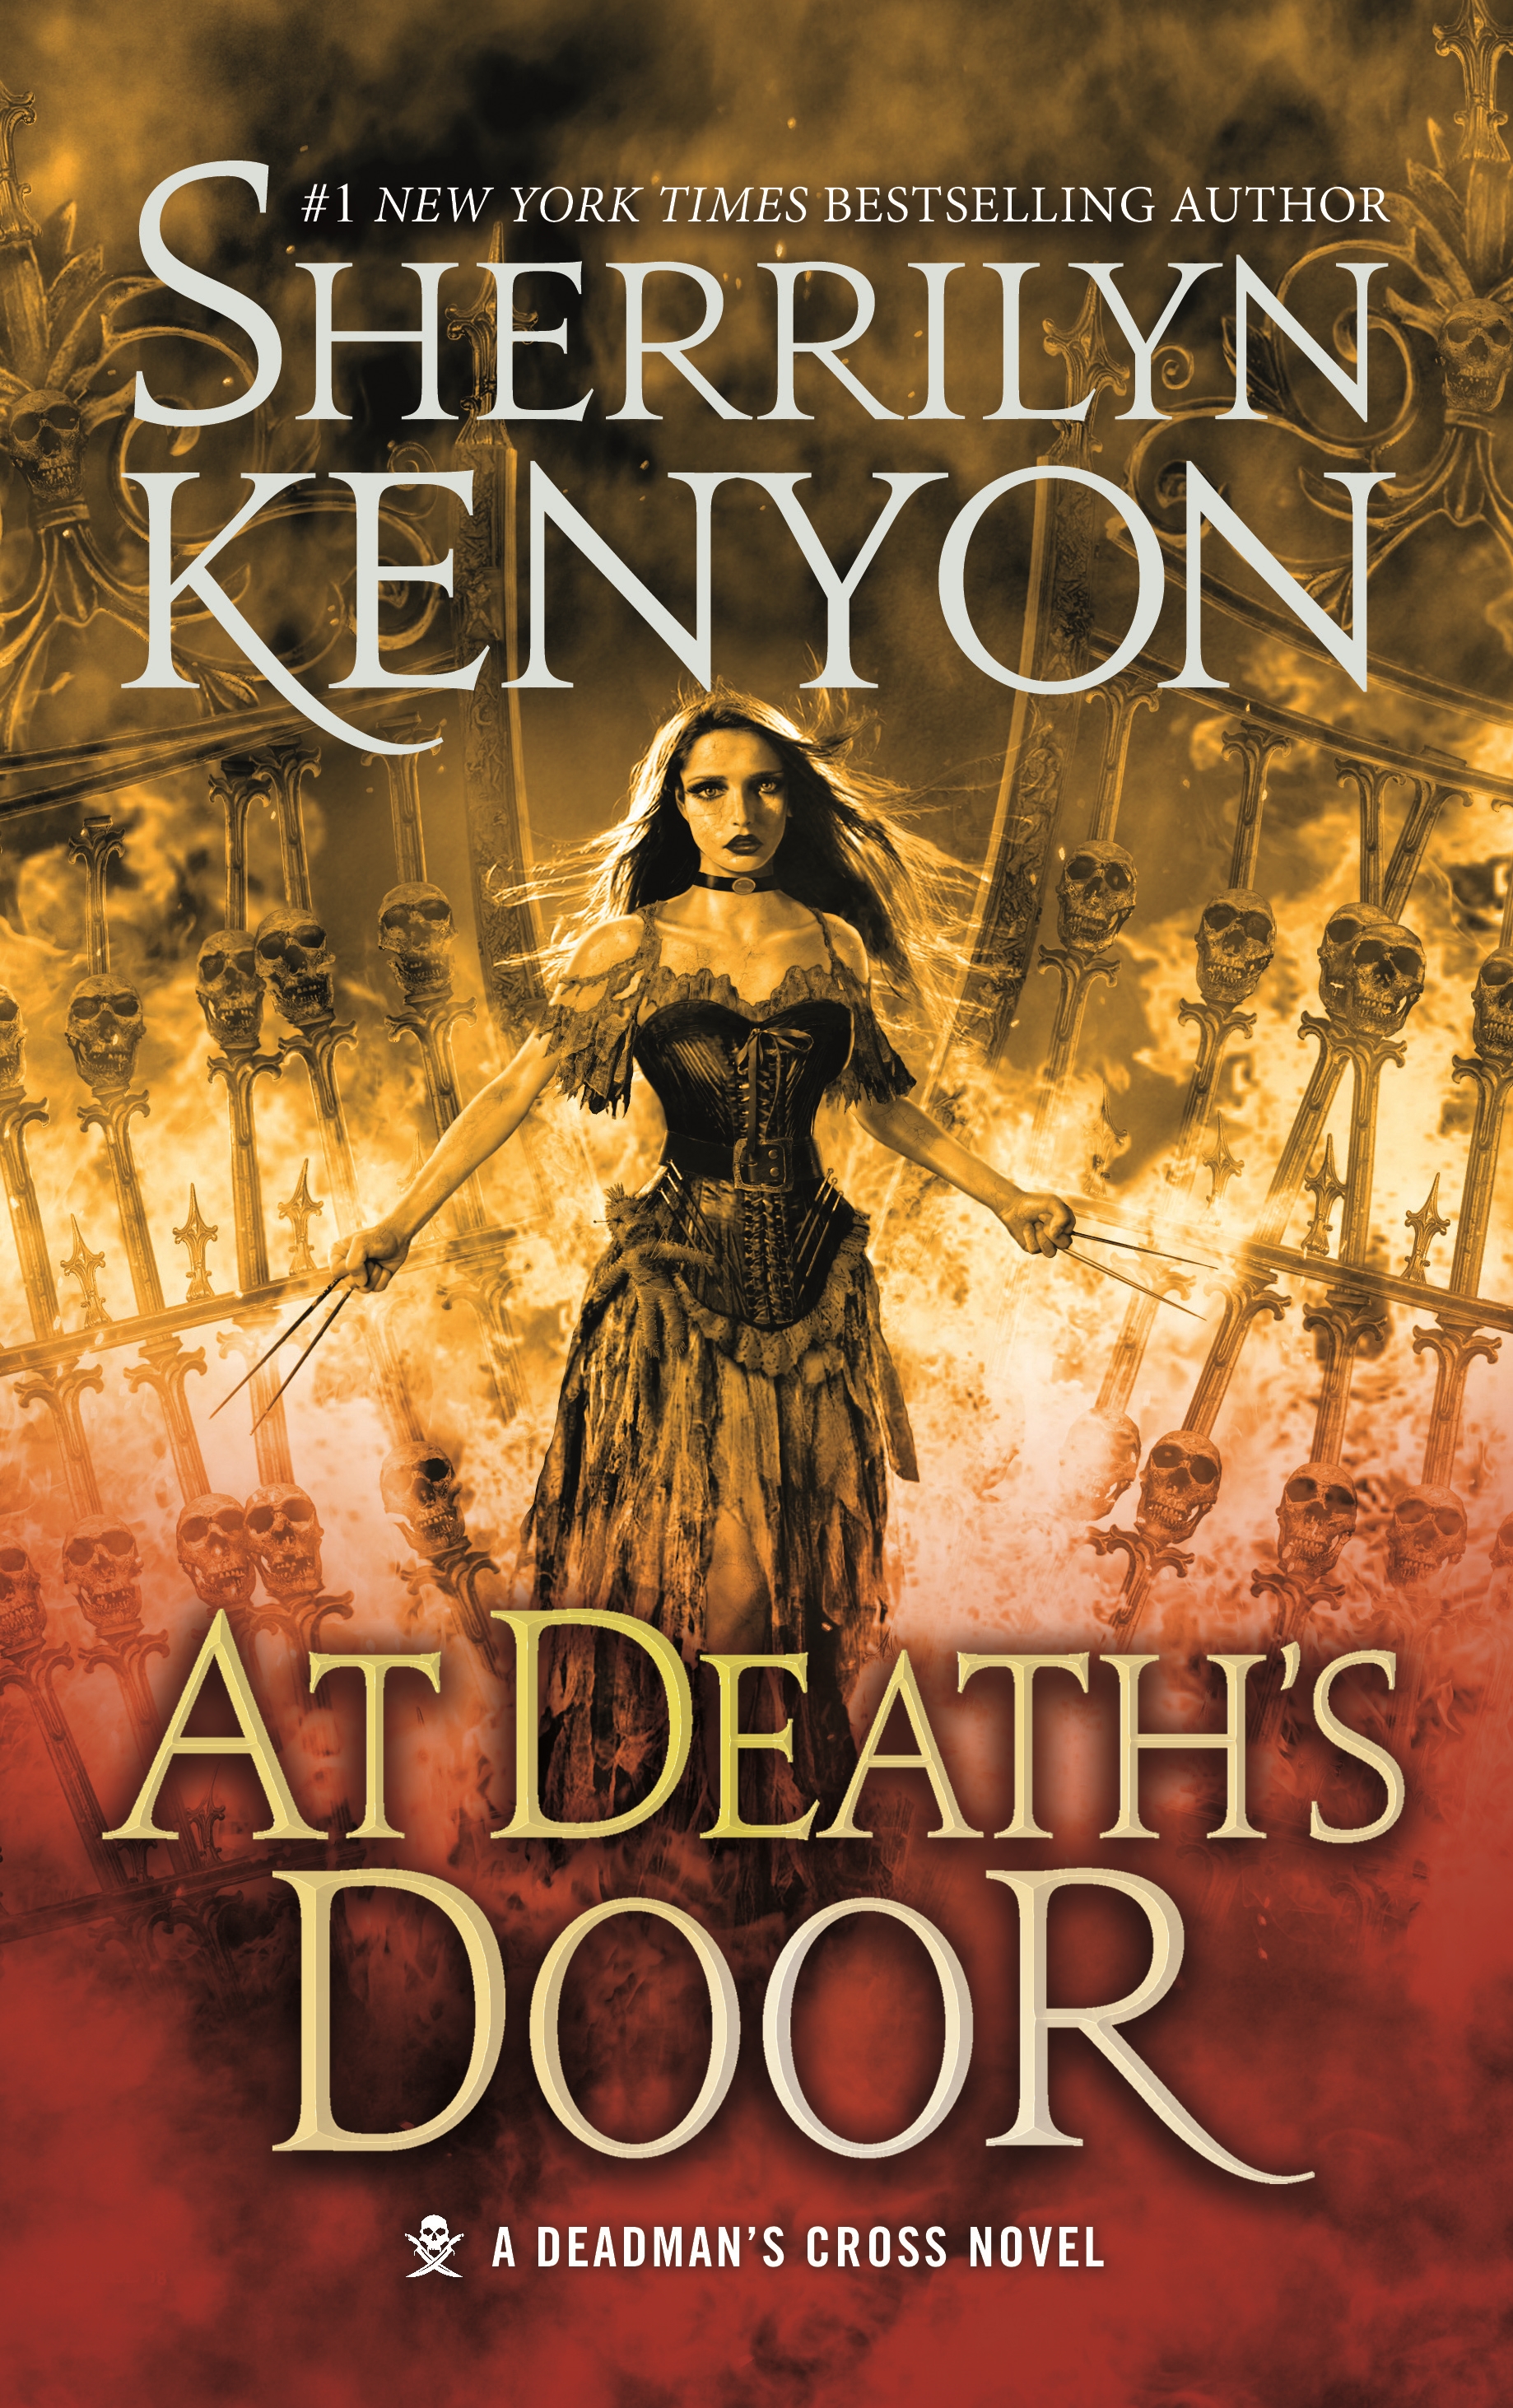 At Death's Door : A Deadman's Cross Novel by Sherrilyn Kenyon